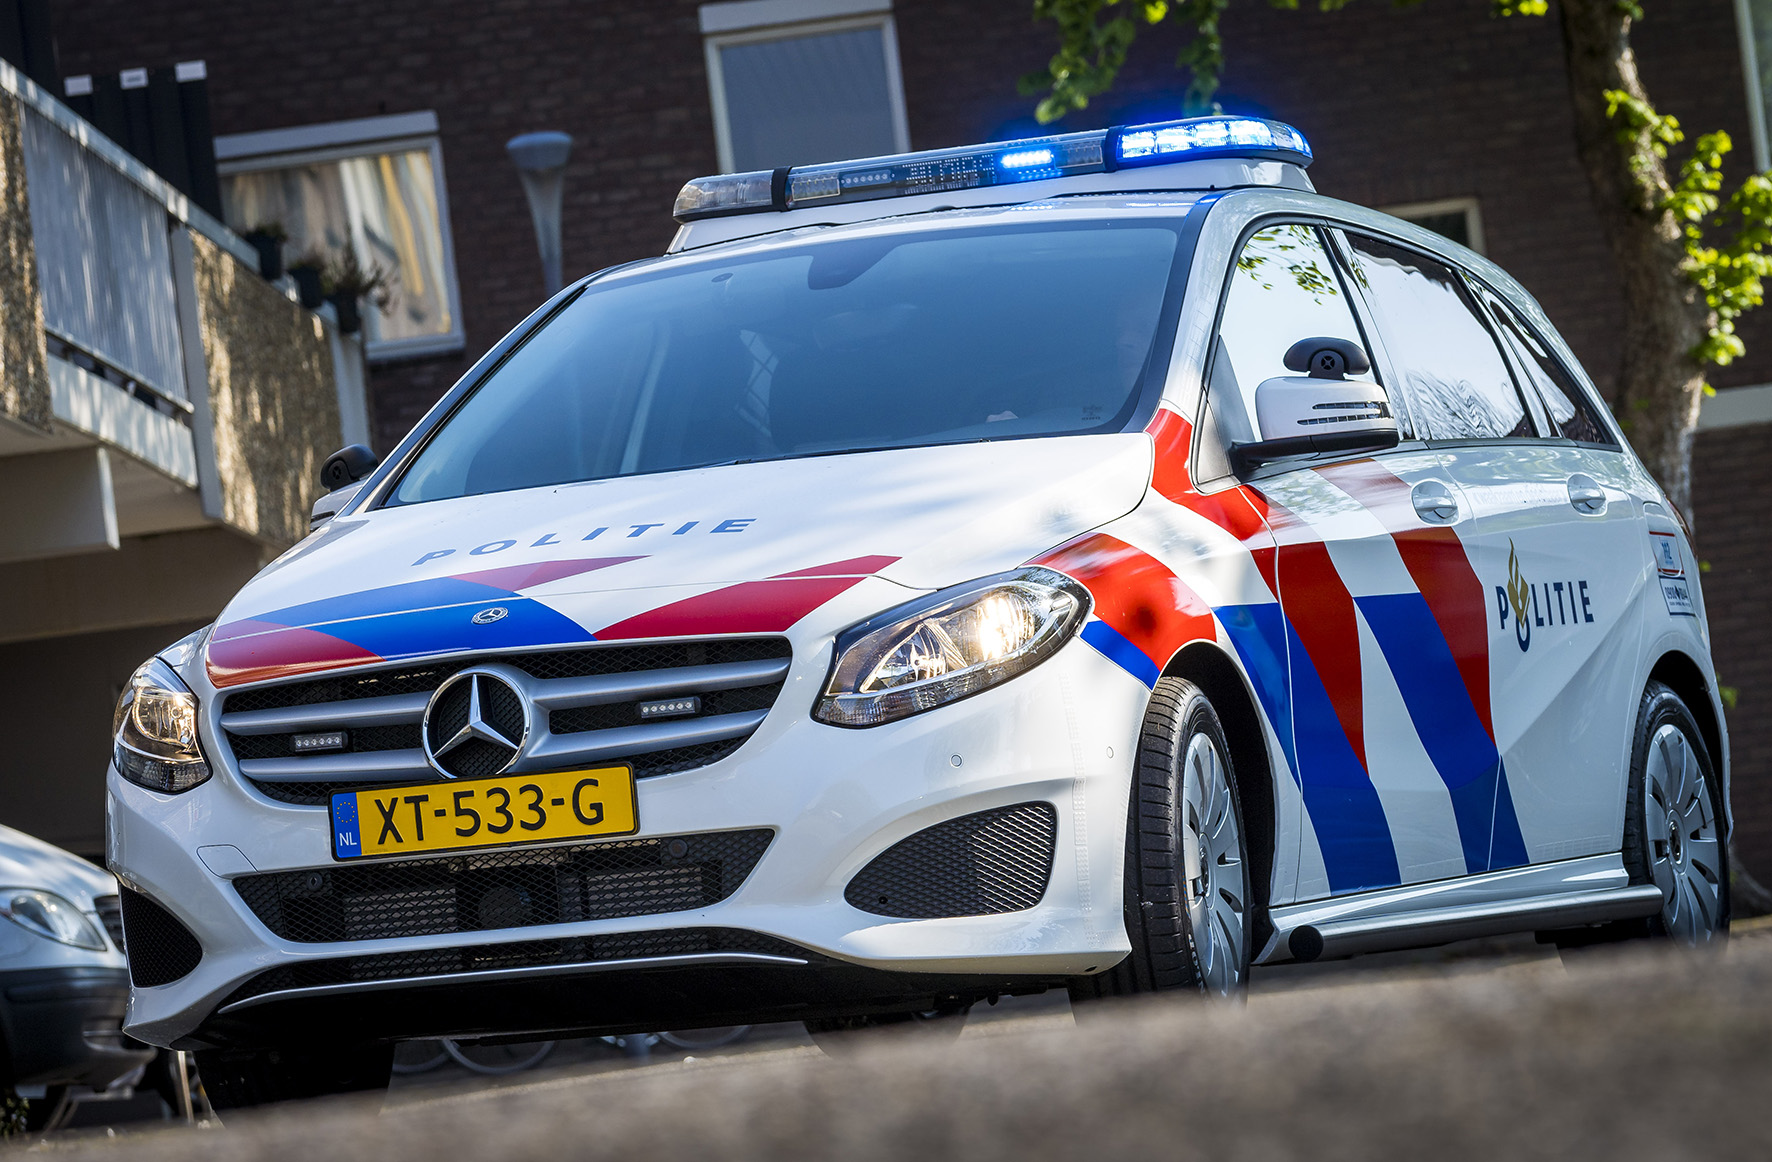 Politie met grote spoed naar de Veenweg in Ter Apel vanwege ongeval met letsel